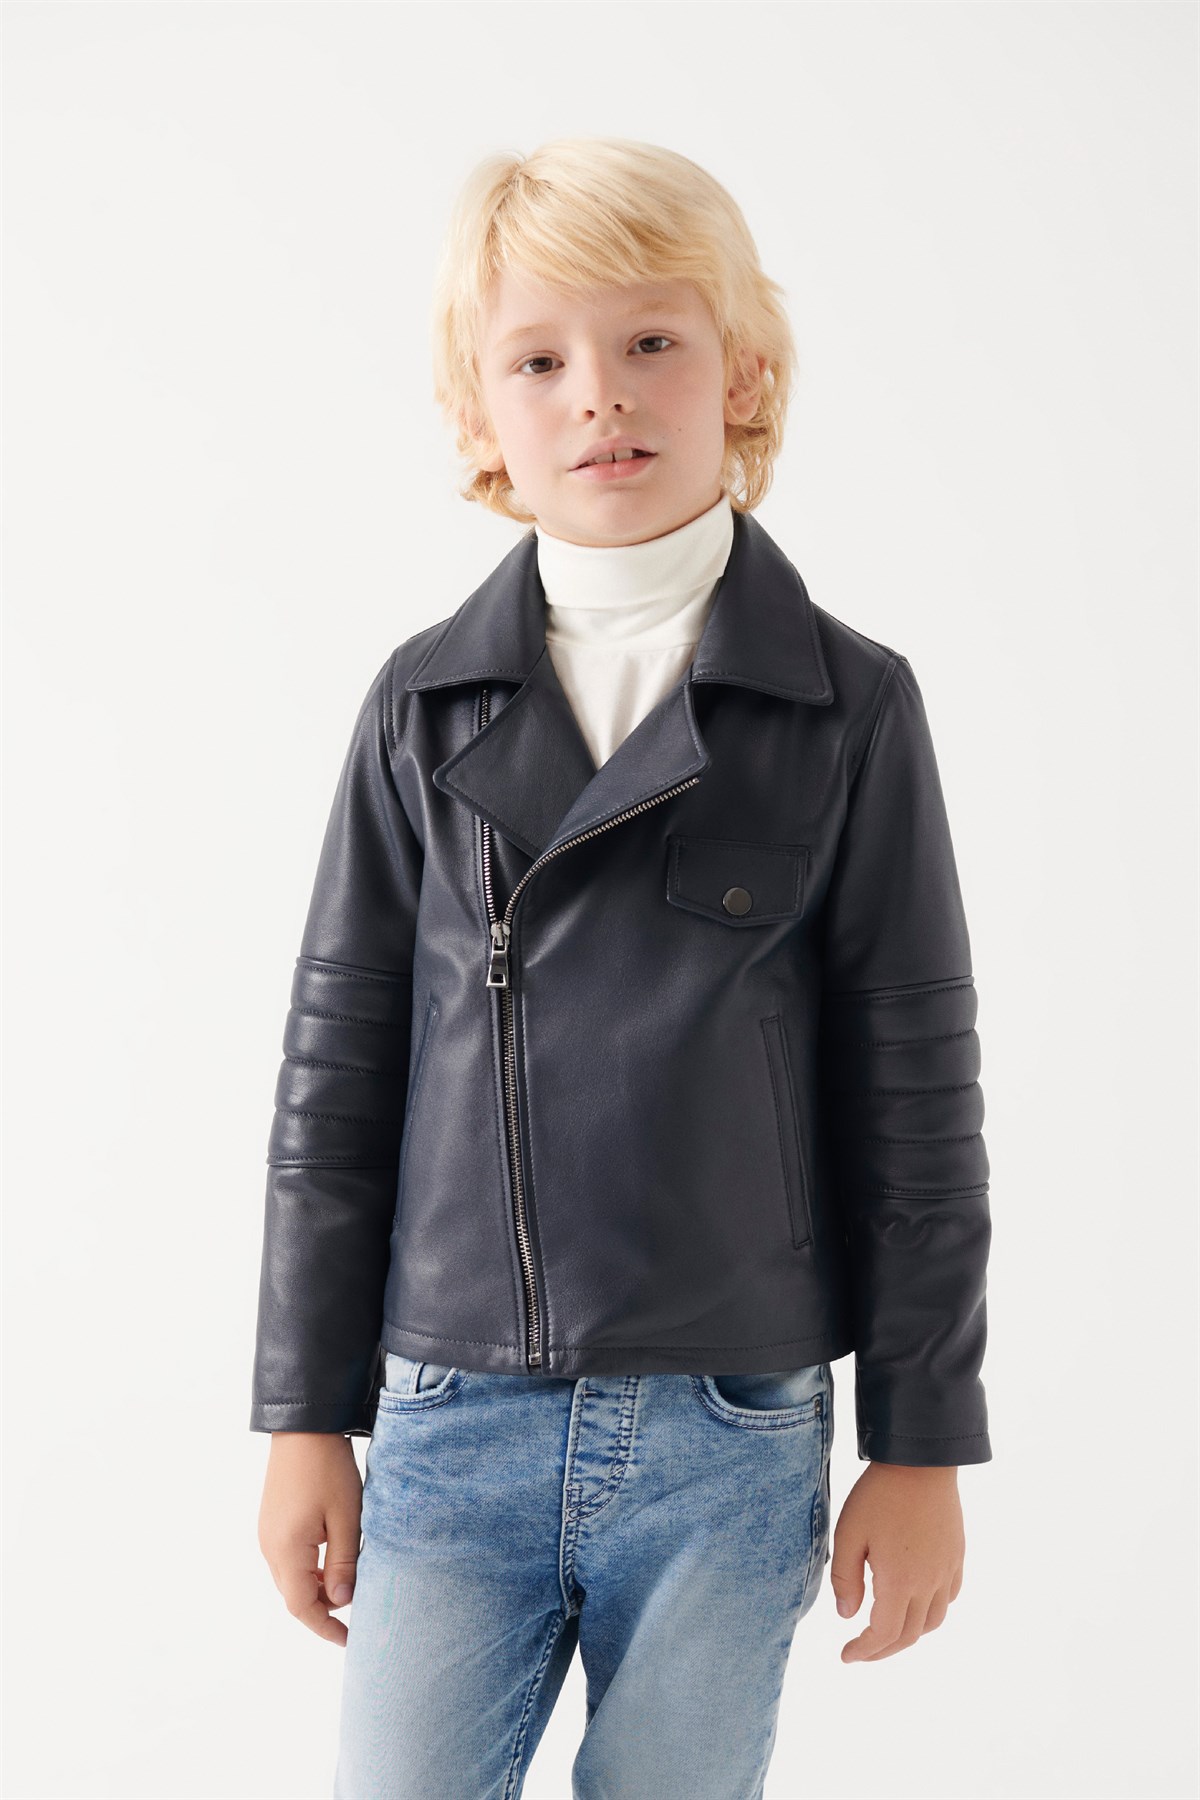 JONNY Erkek Çocuk Lacivert Deri Ceket | Erkek Çocuk Deri Ceket Modelleri